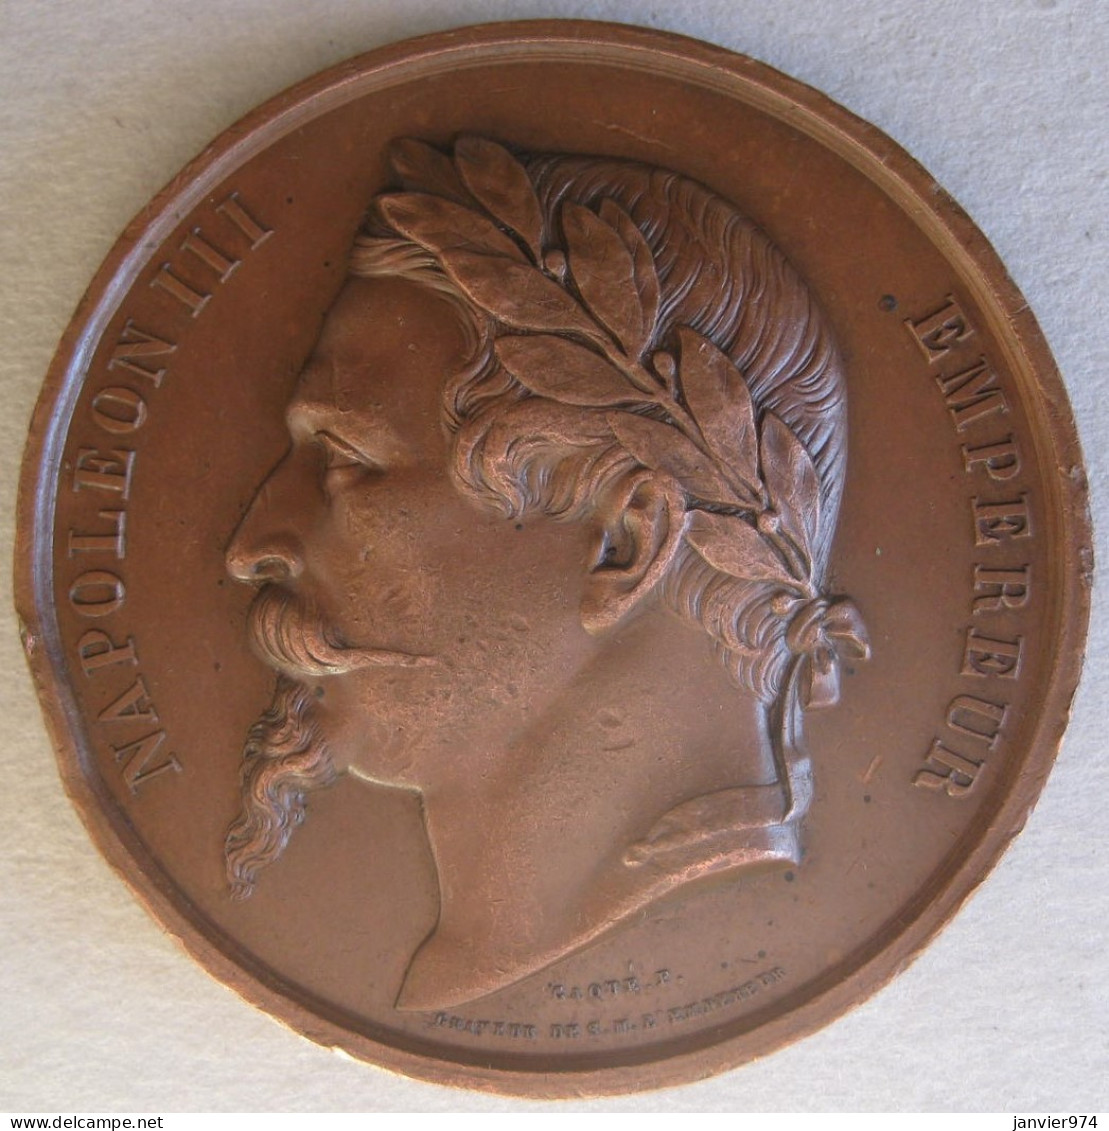 Médaille En Cuivre Napoléon III , Concours Agricole LAVAL 1862 Animaux Reproducteurs, Gravée Par Caque - Monarchia / Nobiltà